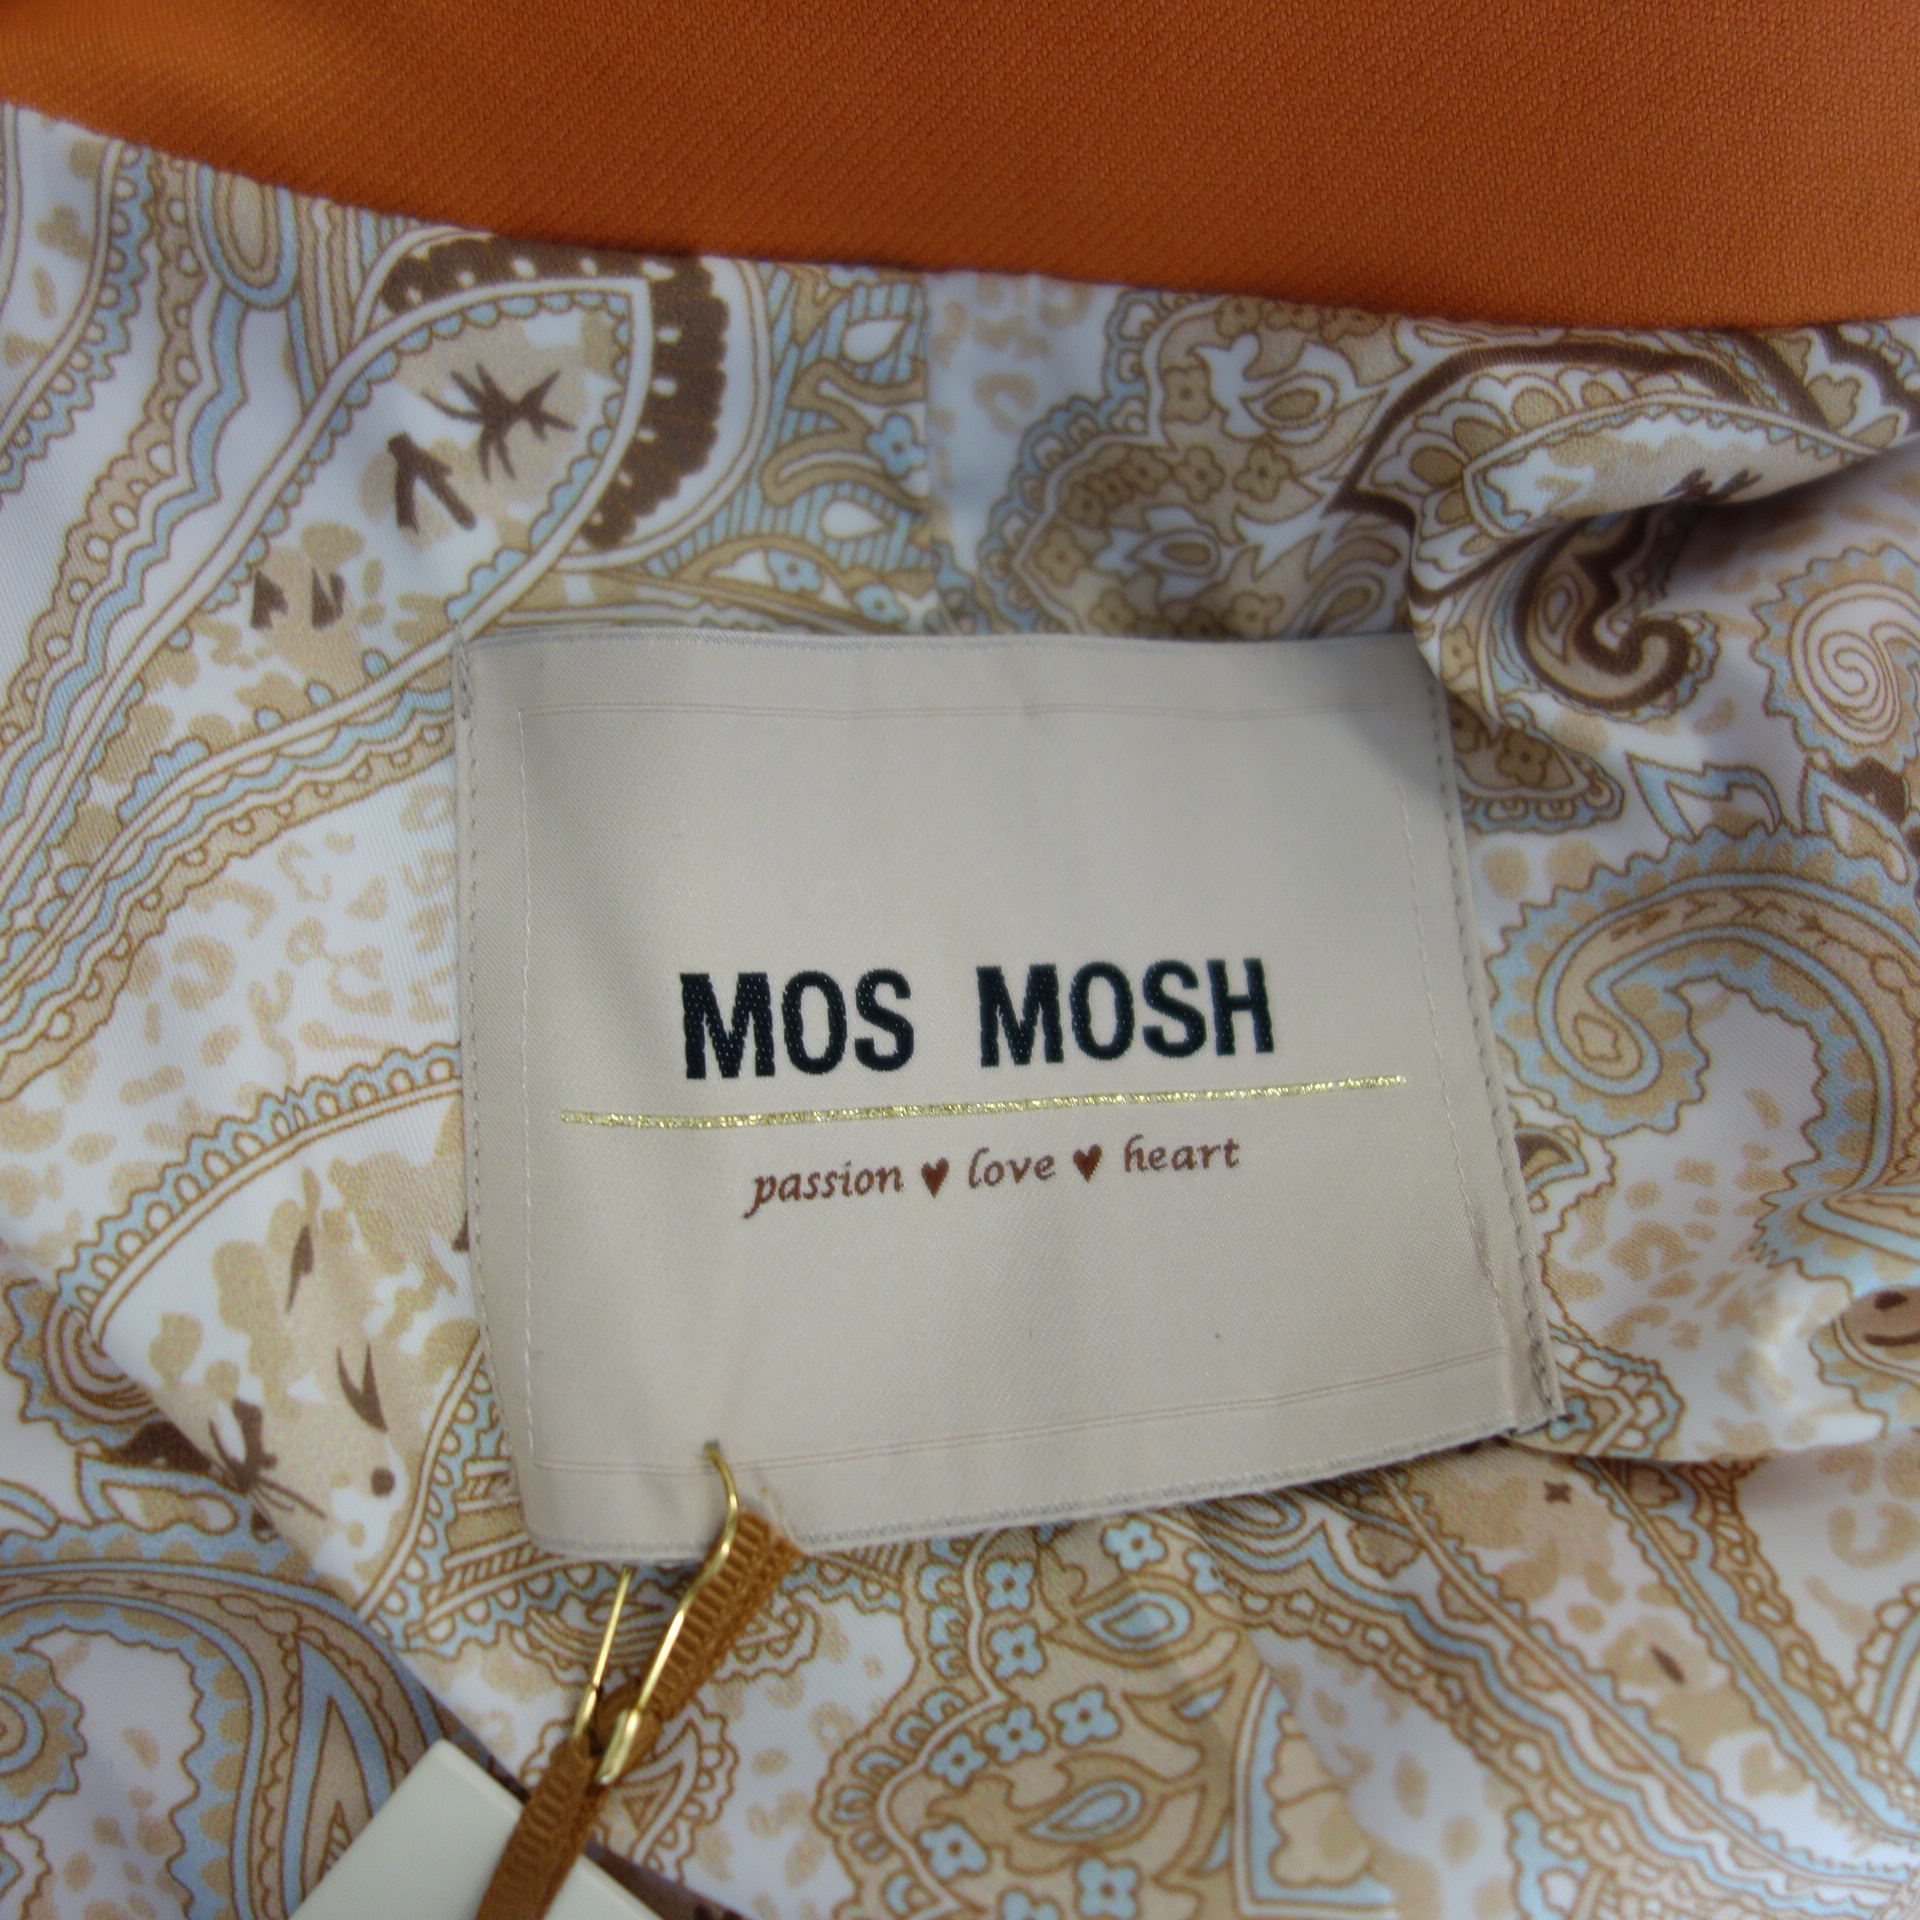 MOS MOSH Damen Blazer Jacke Orange Modell Beliz Twiggy Doppelreiher Slim